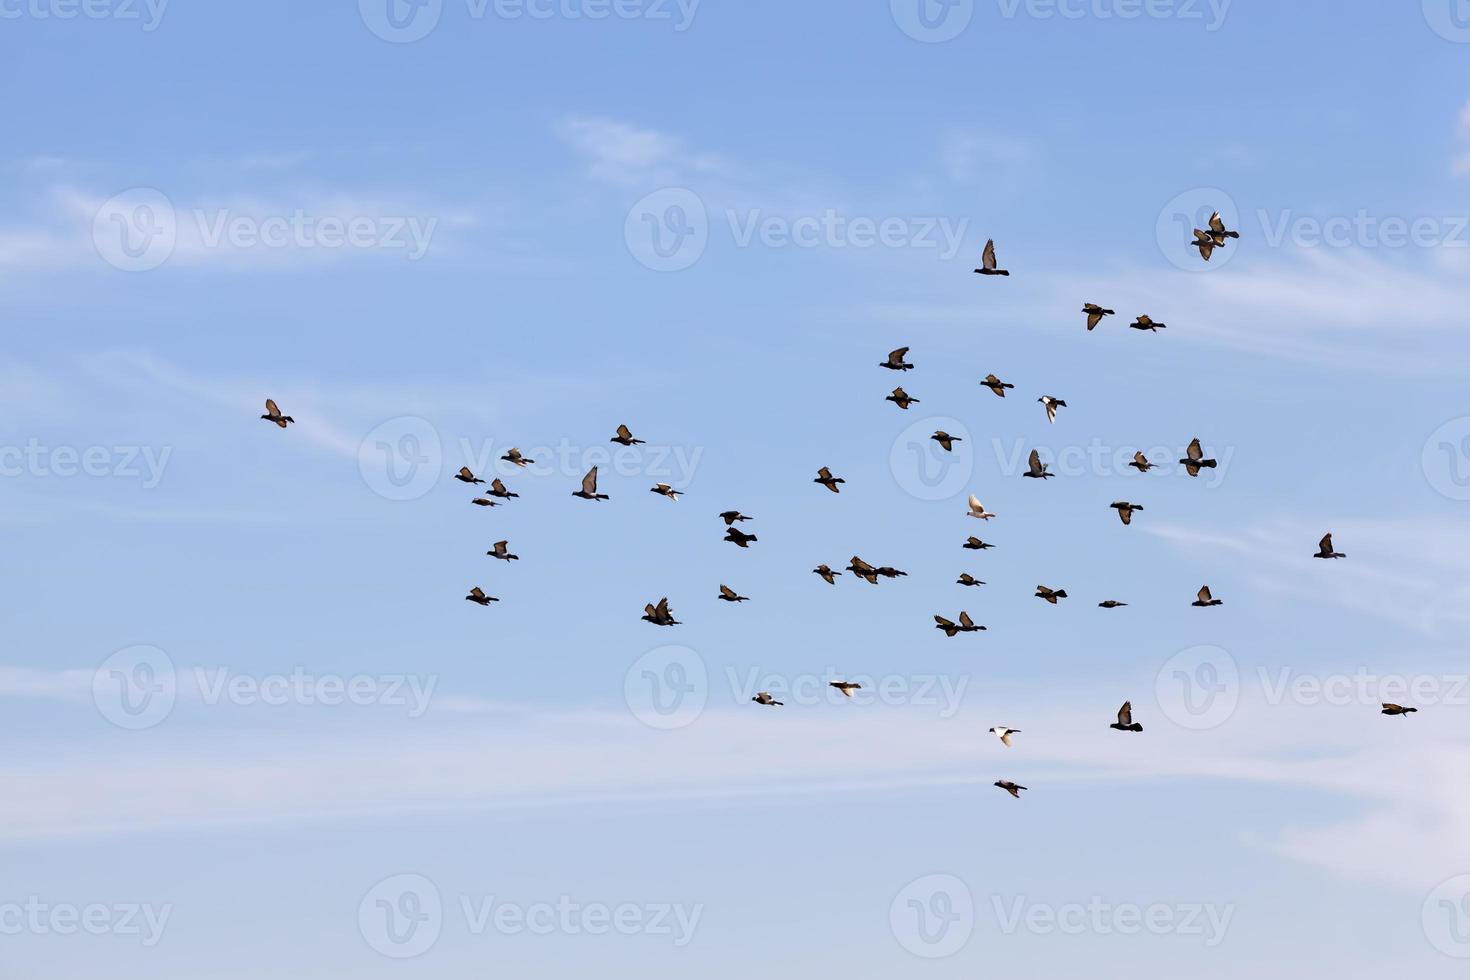 Ein Schwarm Tauben fliegt in den blauen Himmel foto